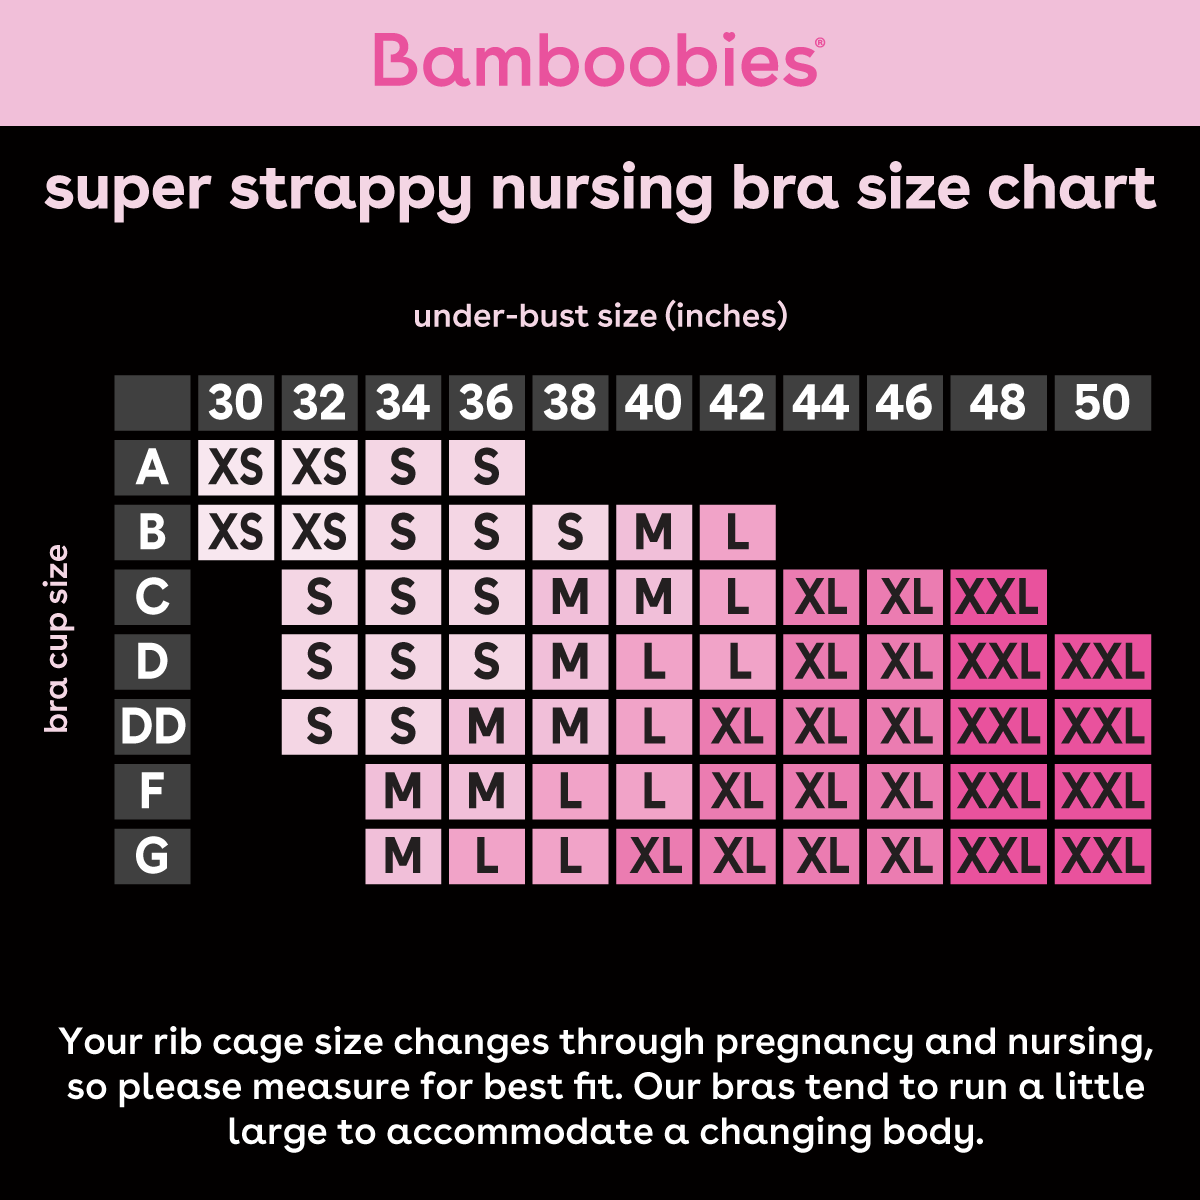 Strappy nursing bra size chart